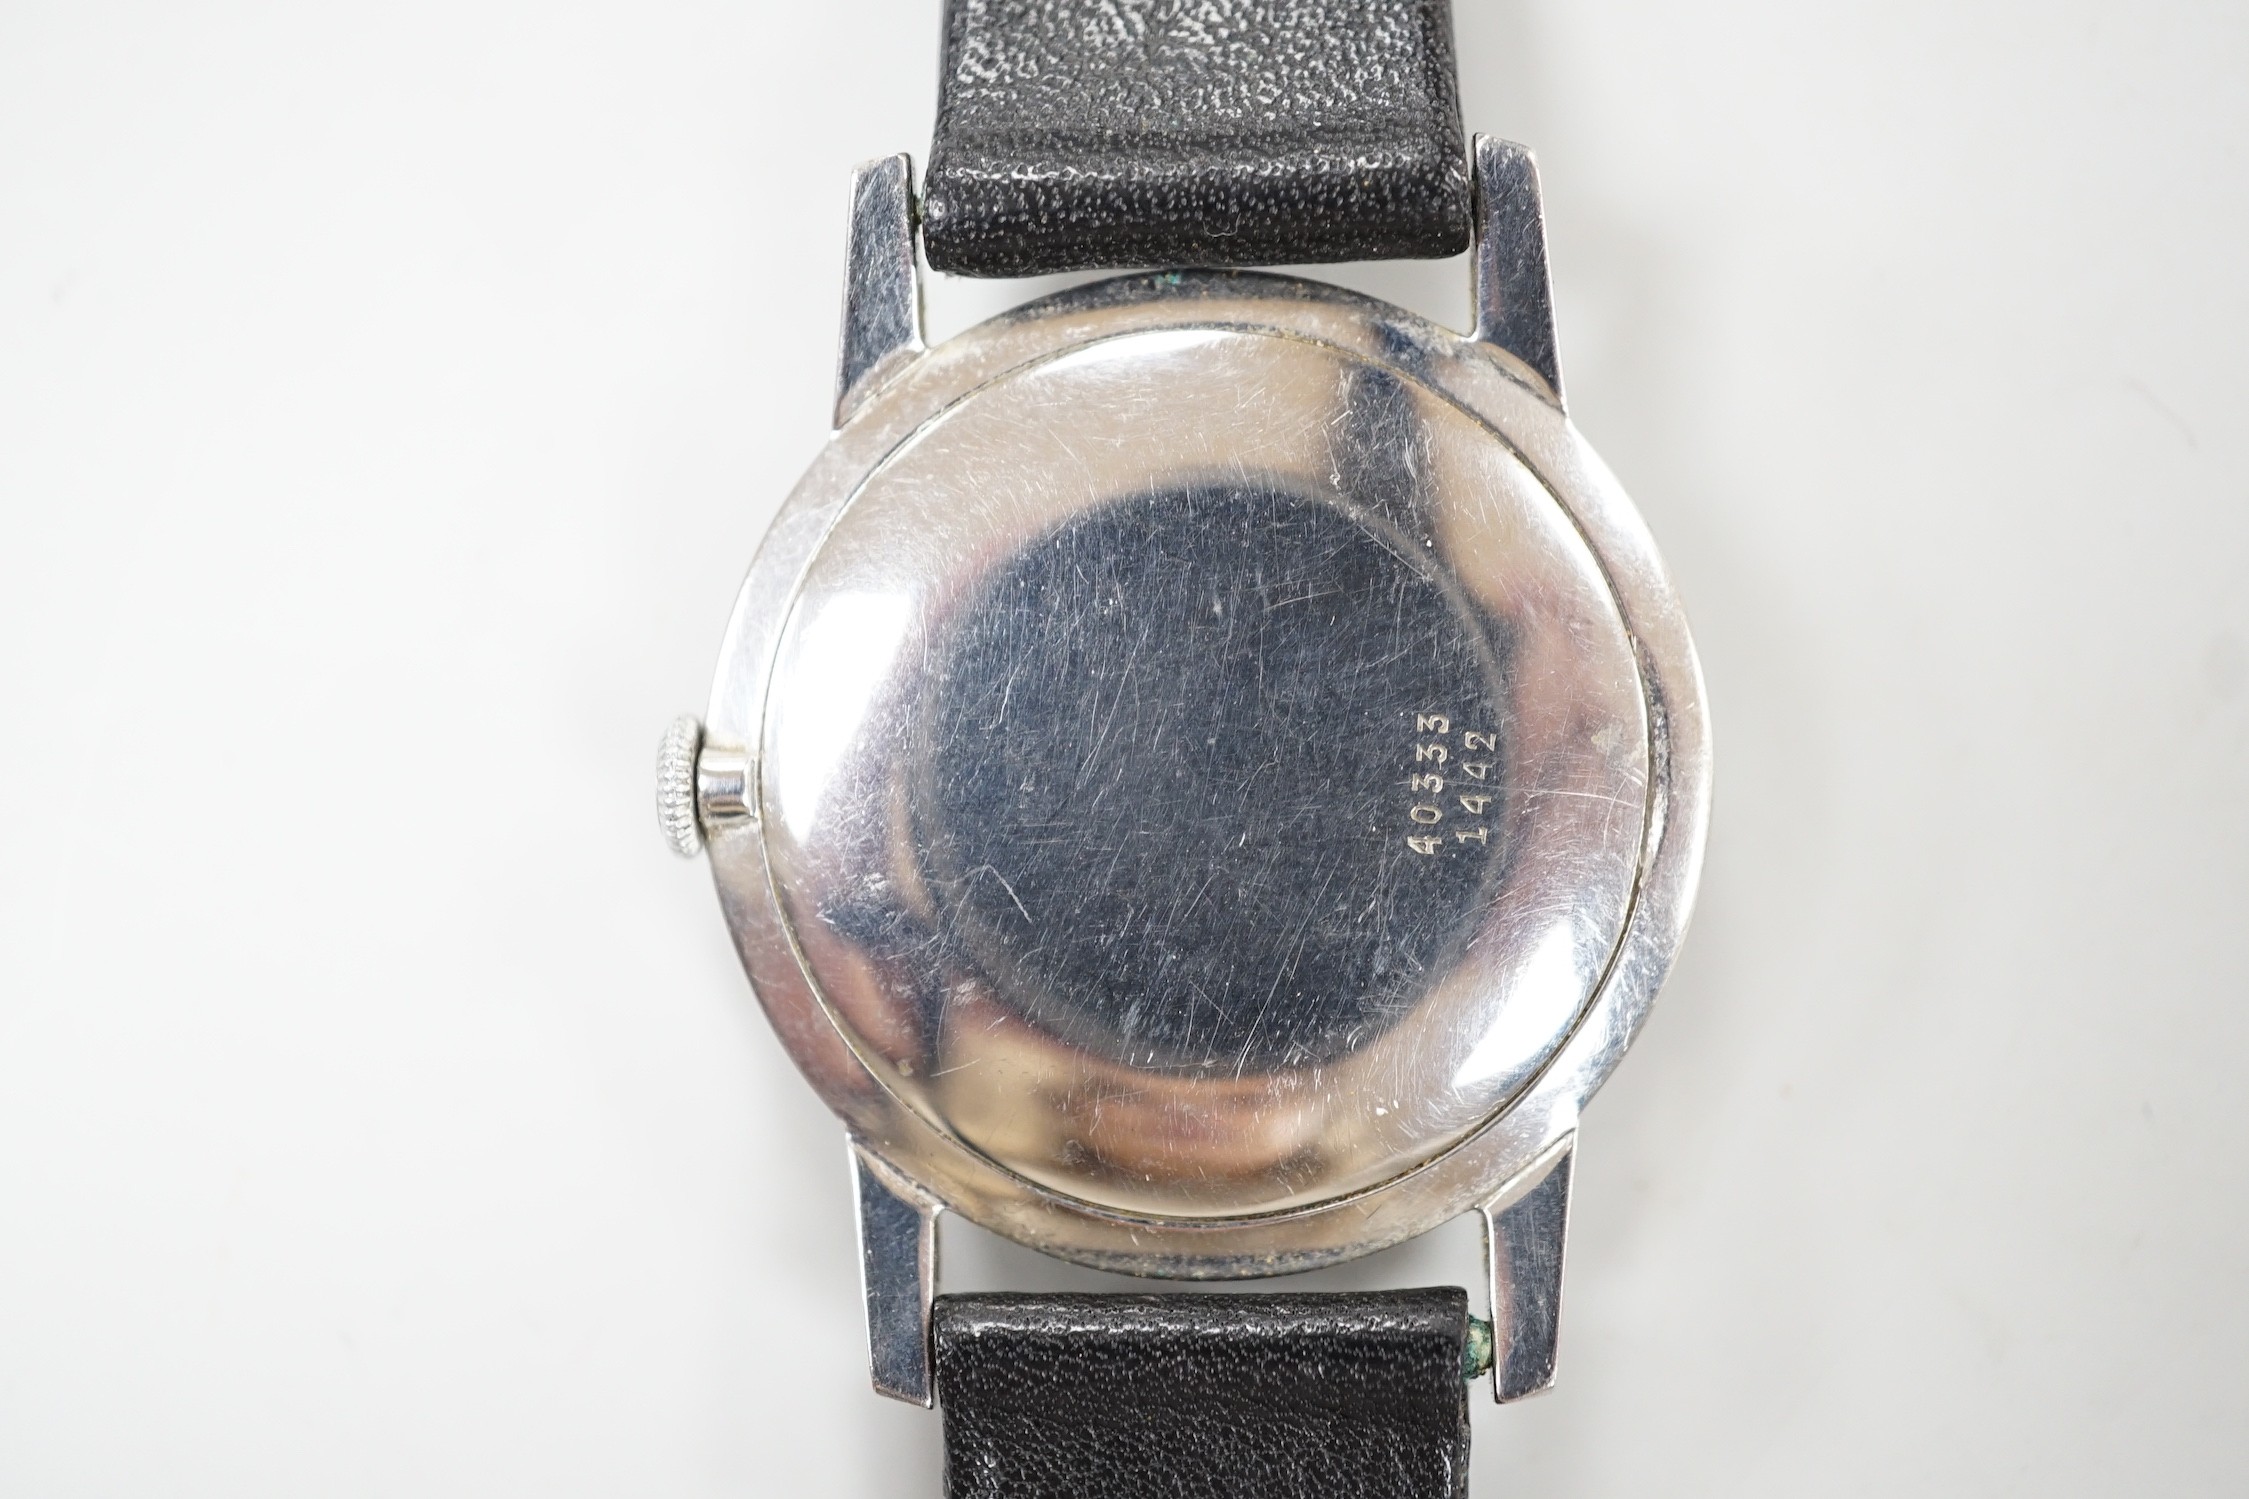 A gentleman's steel Favre Leuba manual wind dress wrist watch, case diameter 34mm, on associated leather strap.